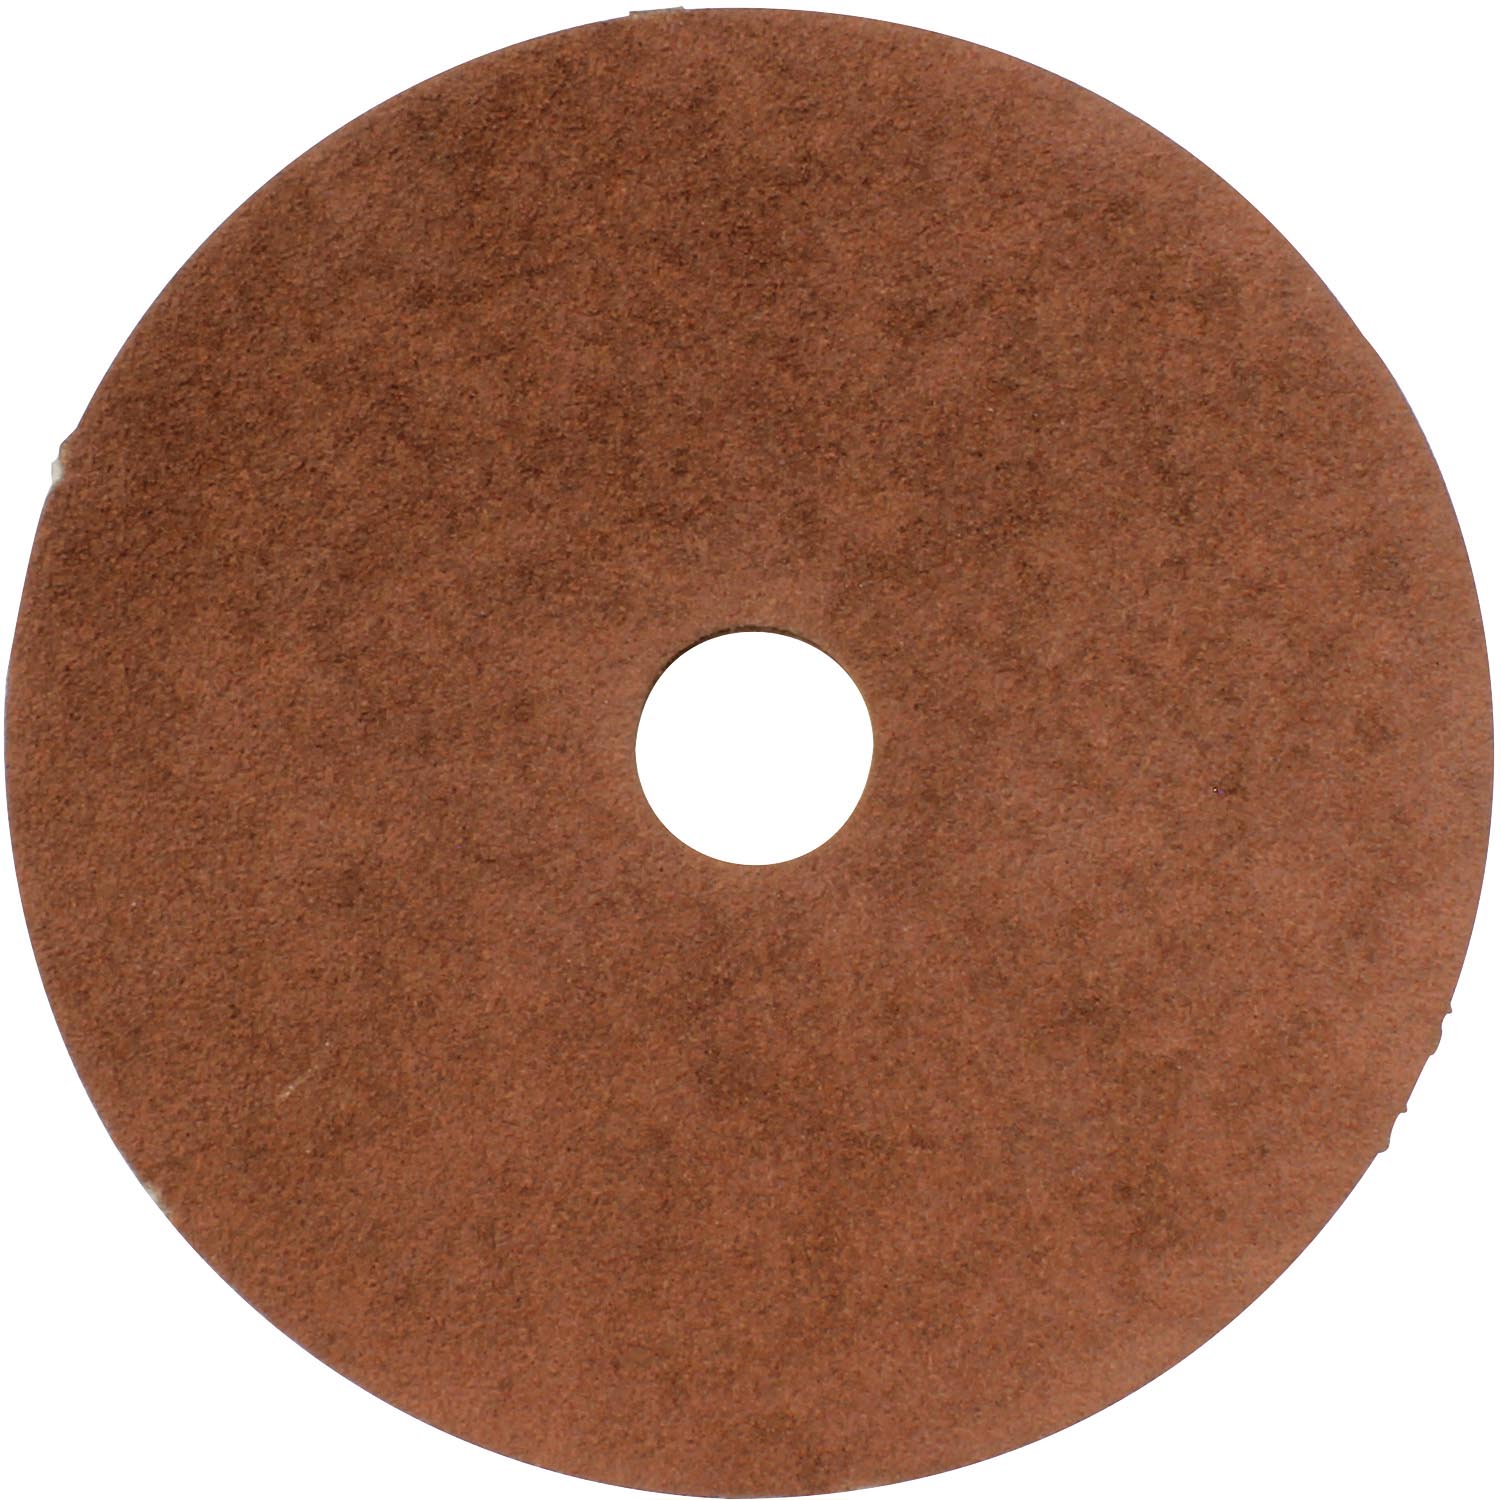 Makita 742040-B-25 Abrasive Disc, 4 in Dia, 5/8 in Arbor, 120 Grit, Fiber Backing - 1